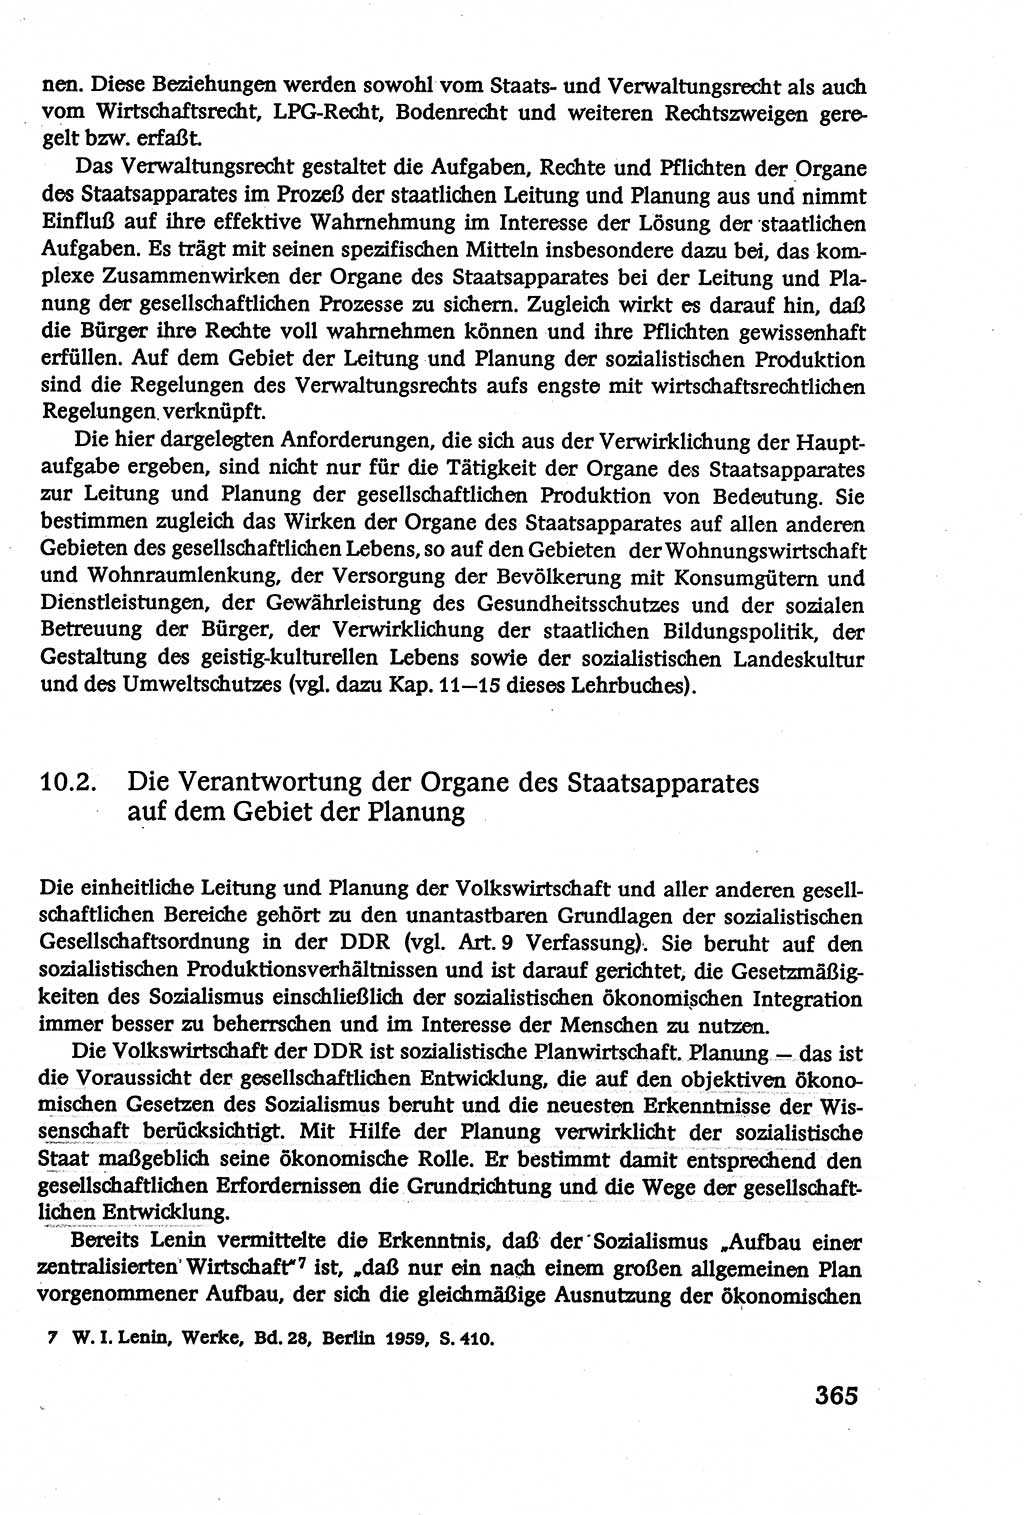 Verwaltungsrecht [Deutsche Demokratische Republik (DDR)], Lehrbuch 1979, Seite 365 (Verw.-R. DDR Lb. 1979, S. 365)